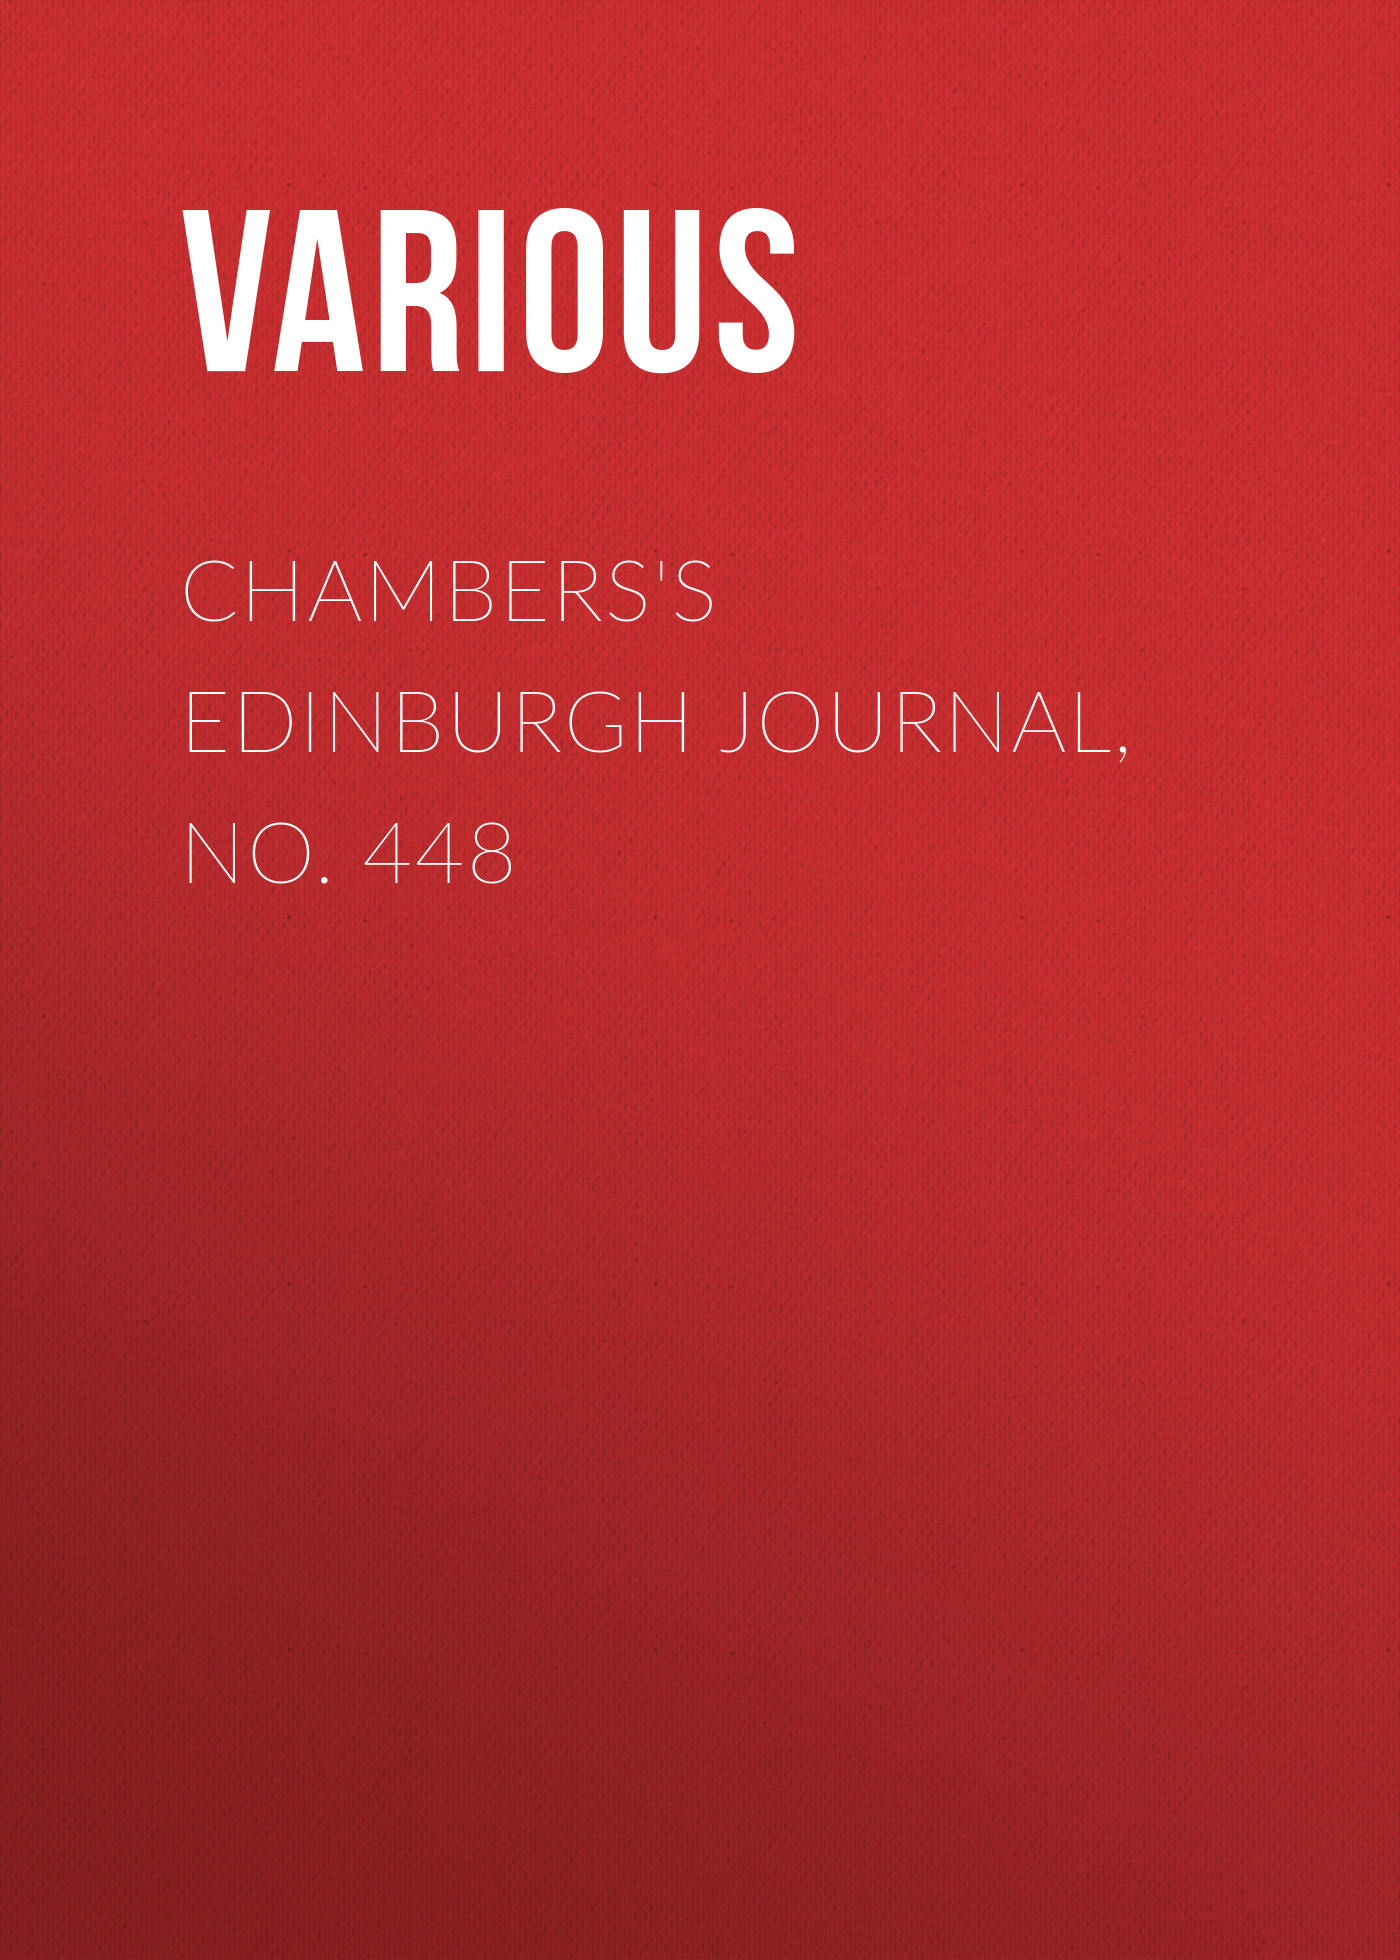 Книга Chambers's Edinburgh Journal, No. 448 из серии , созданная  Various, может относится к жанру Зарубежная старинная литература, Журналы, Зарубежная образовательная литература. Стоимость электронной книги Chambers's Edinburgh Journal, No. 448 с идентификатором 35492343 составляет 0 руб.